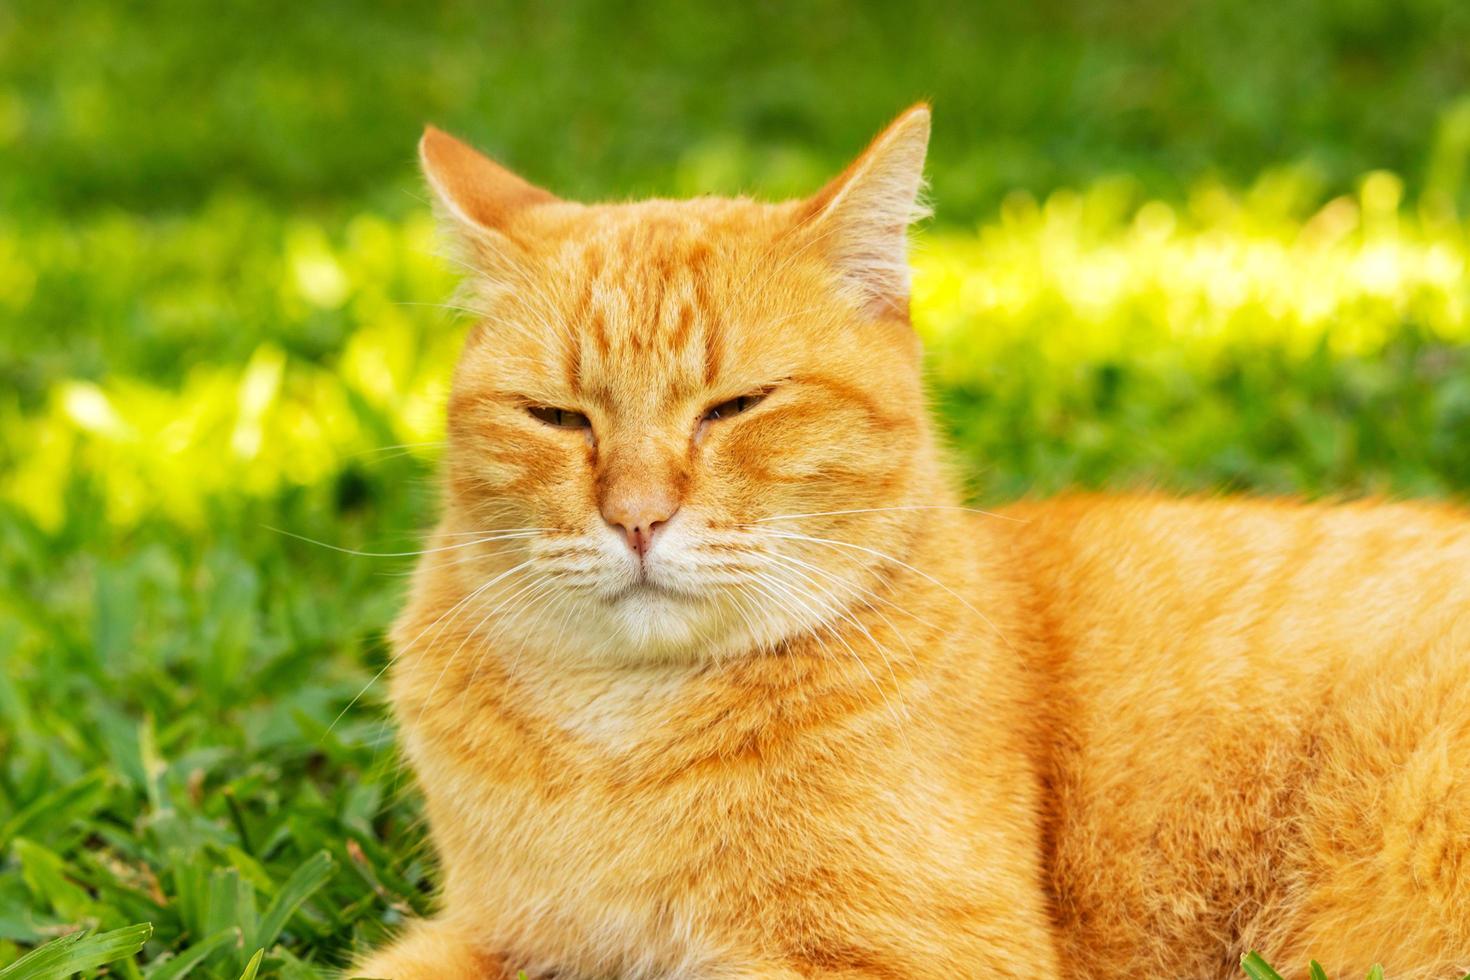 close - up gato marrom bonito com lindos olhos azuis animais de estimação populares foto